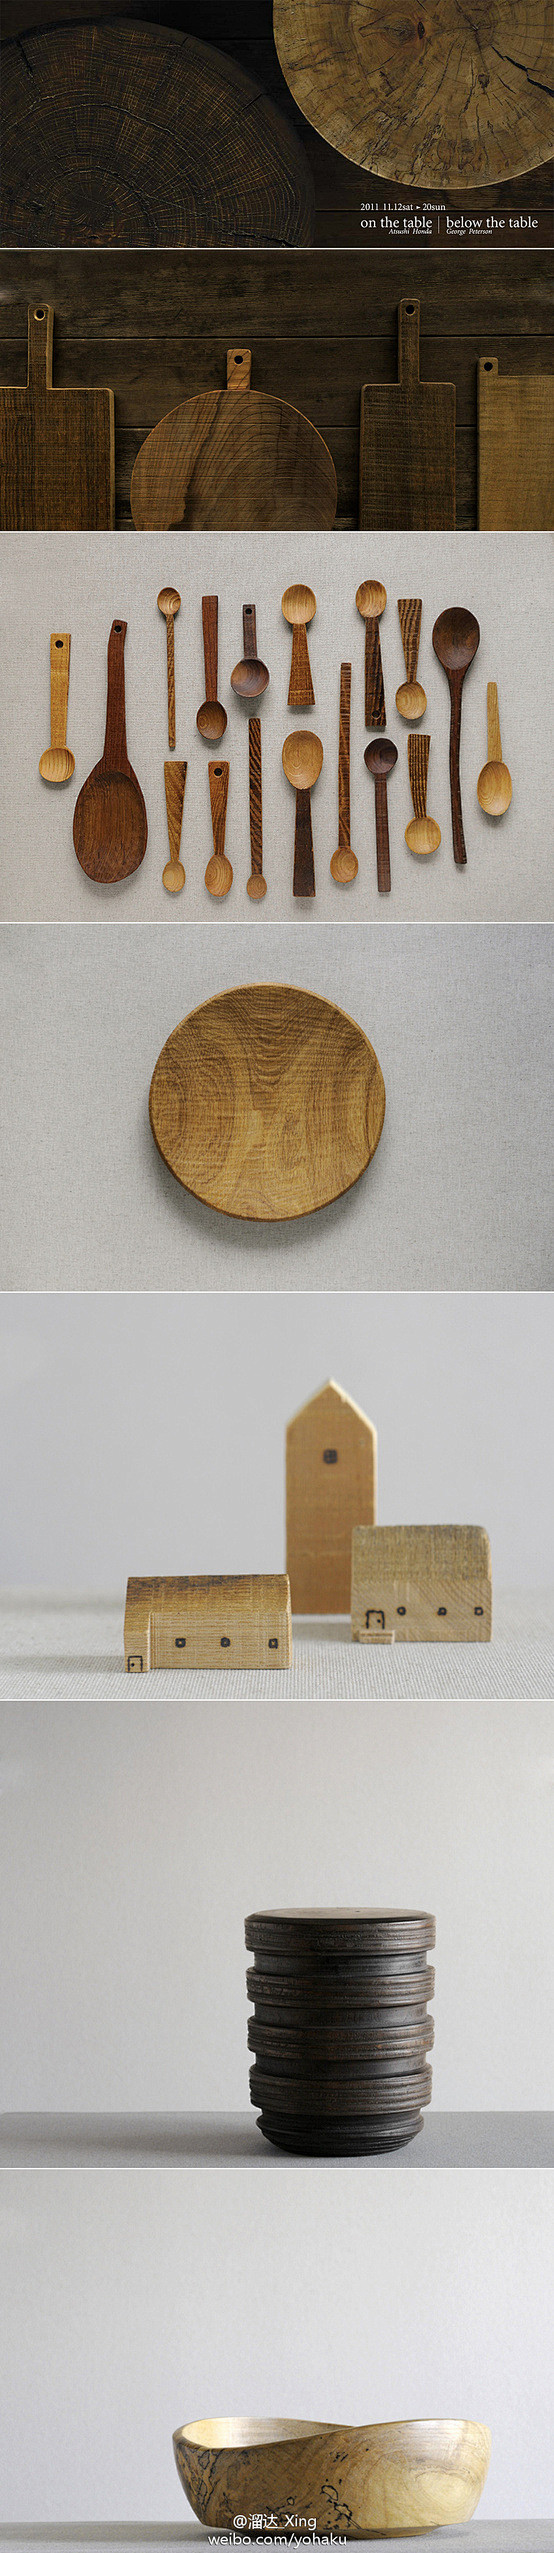 木头盒子→木质生